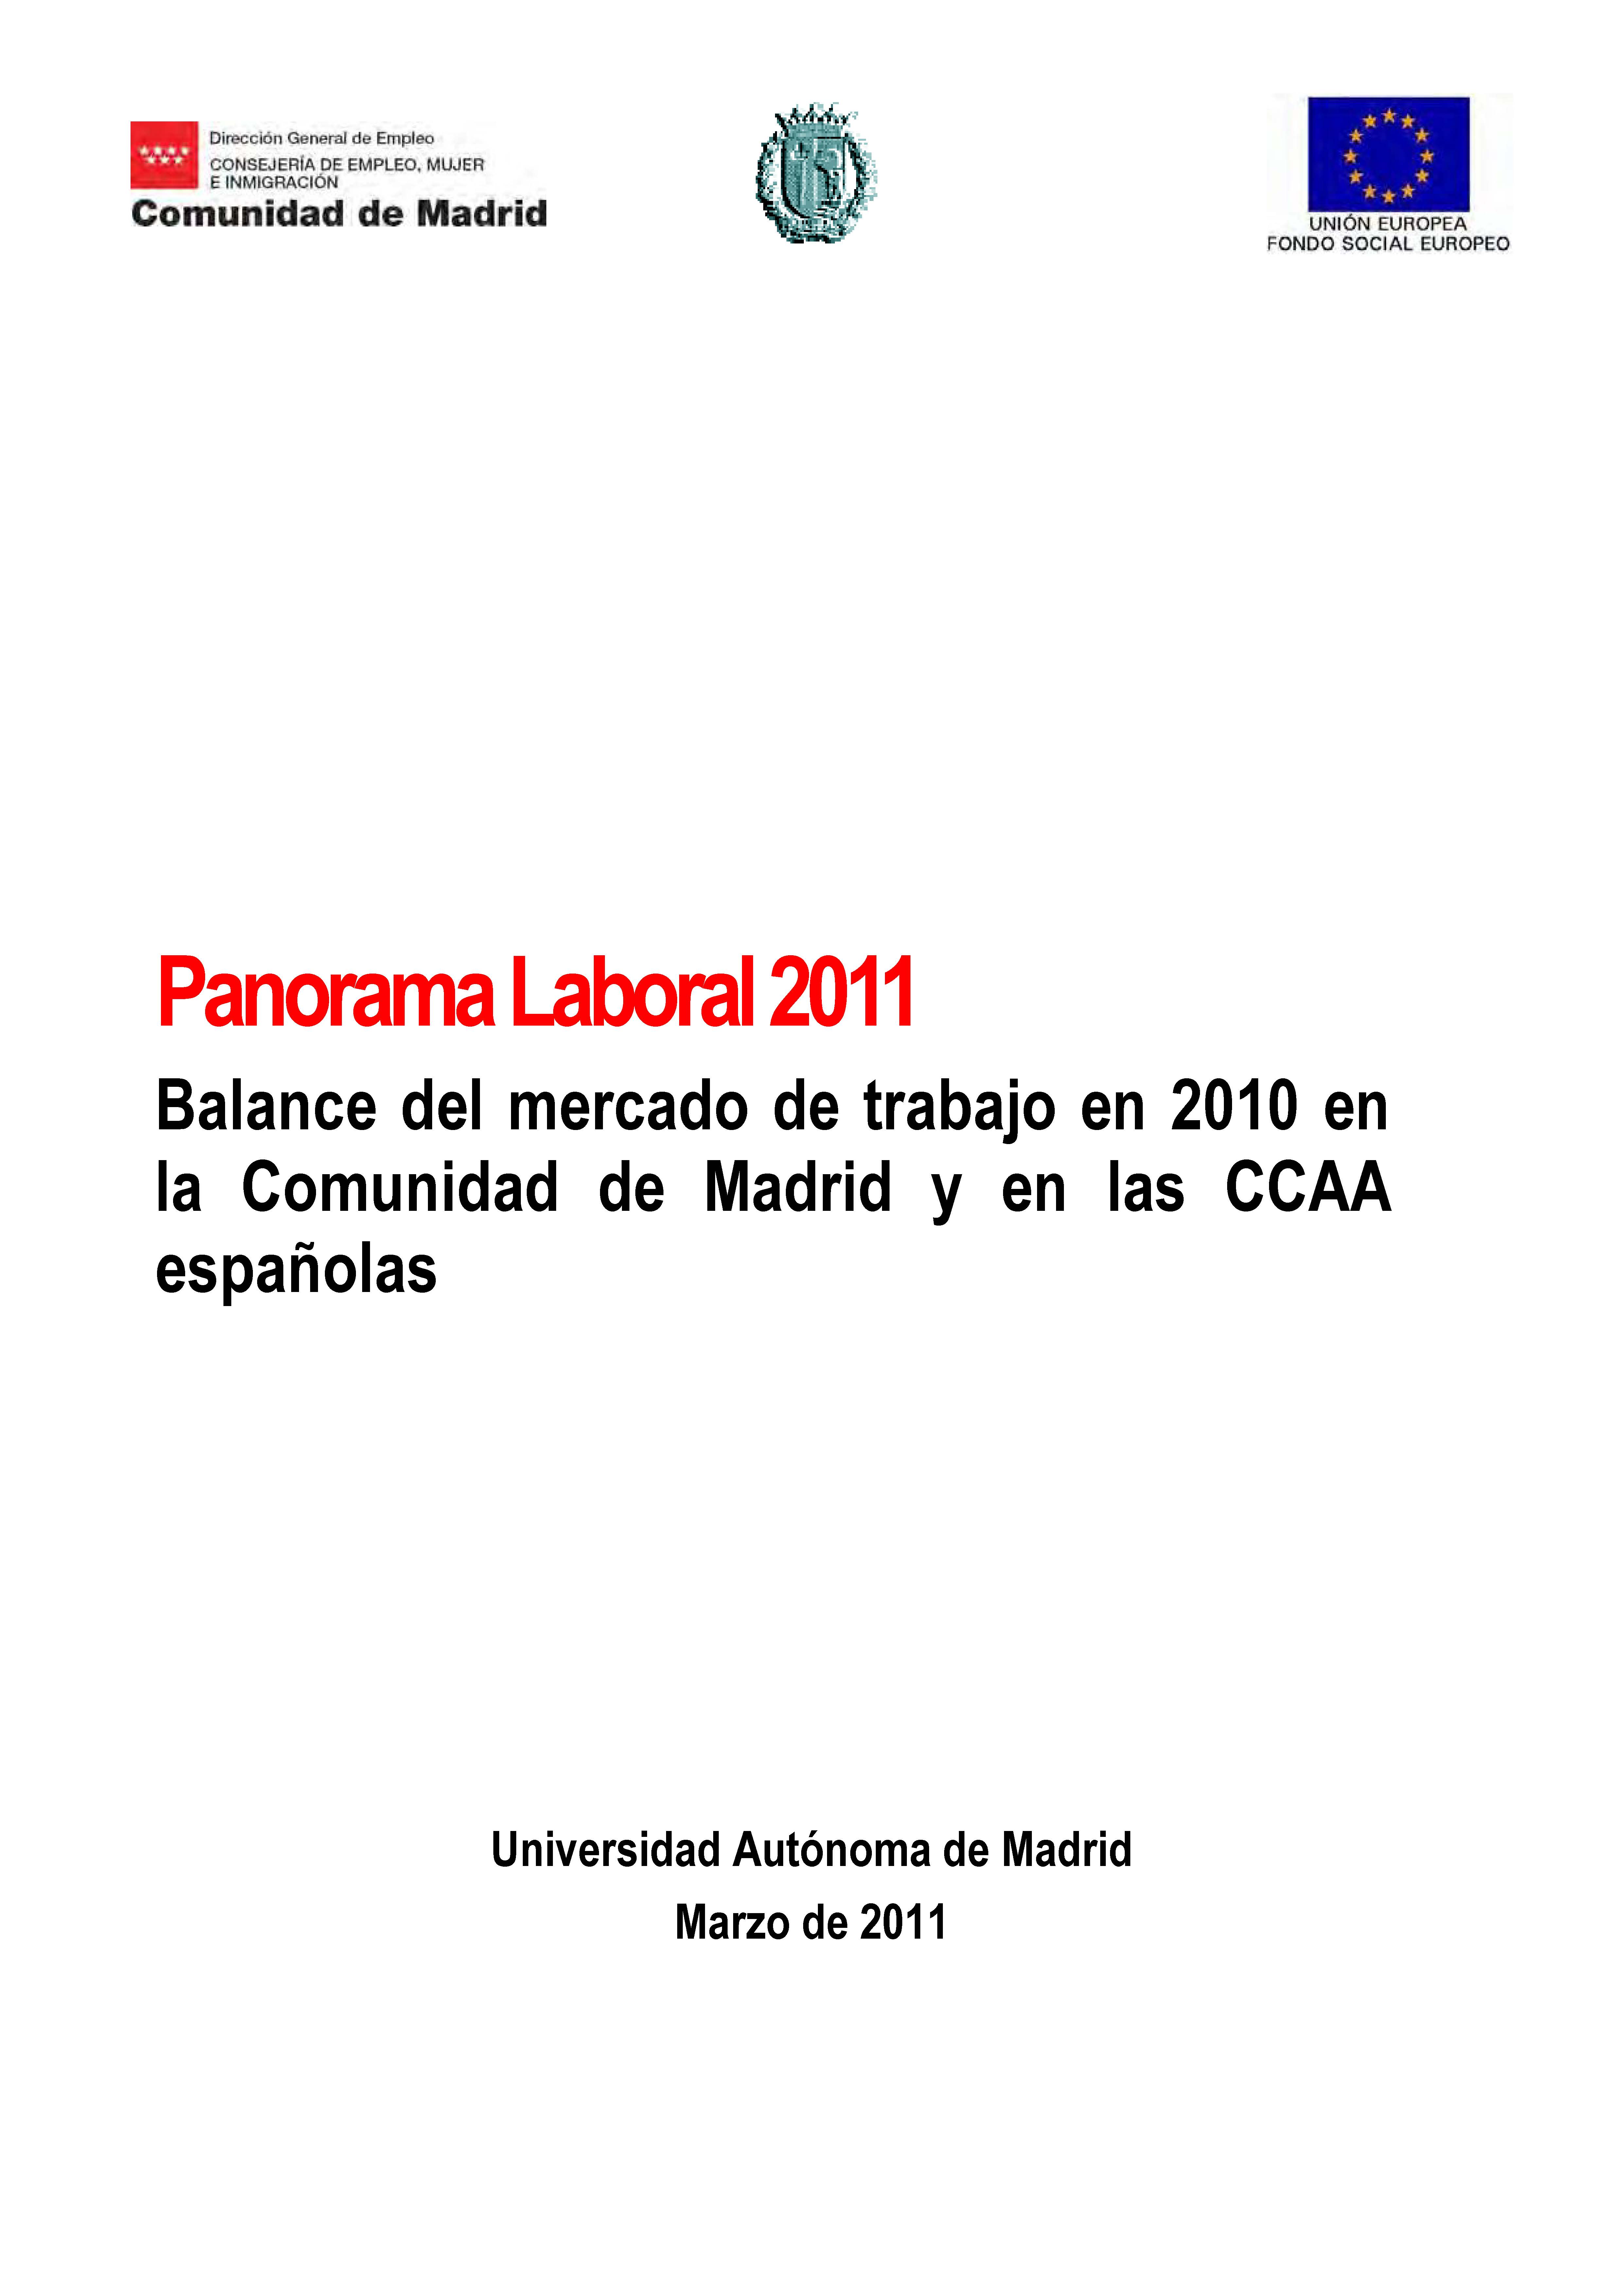 Portada de Panorama Laboral 2011. Balance del mercado de trabajo en la Comunidad de Madrid en 2010